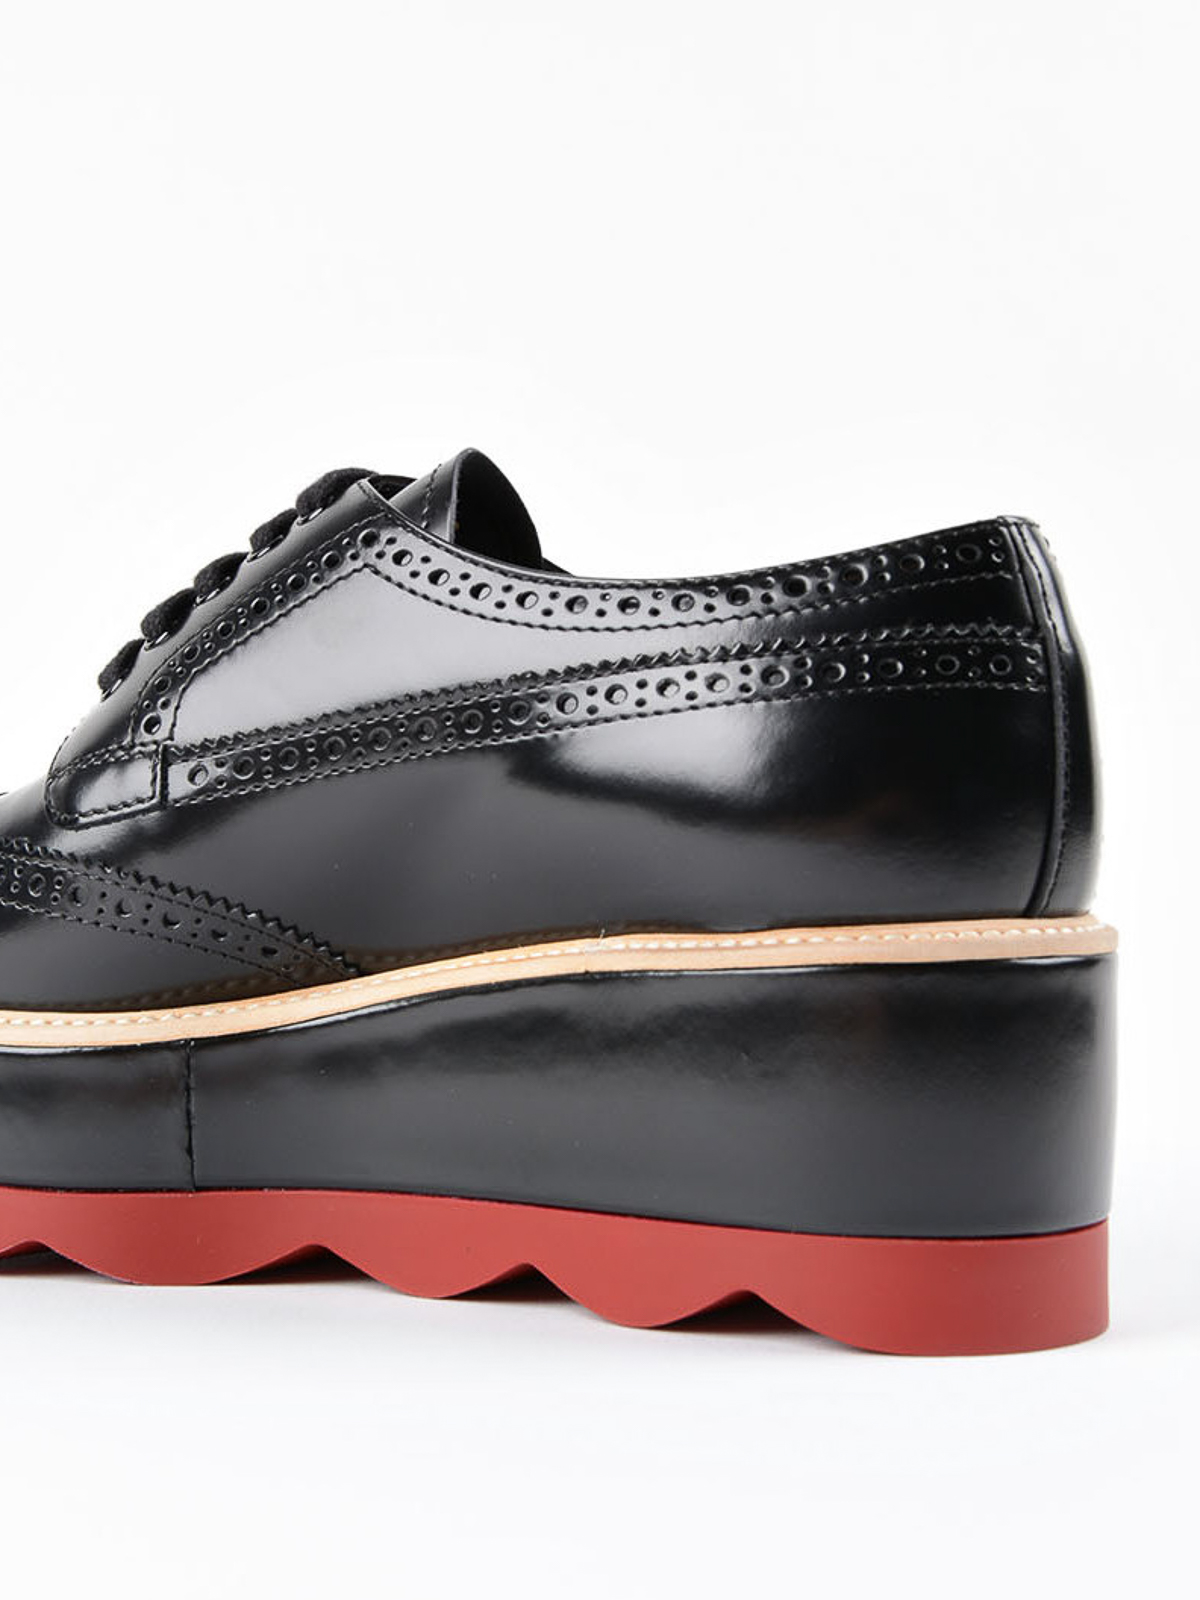 leather platform shoes - lace-ups shoes 